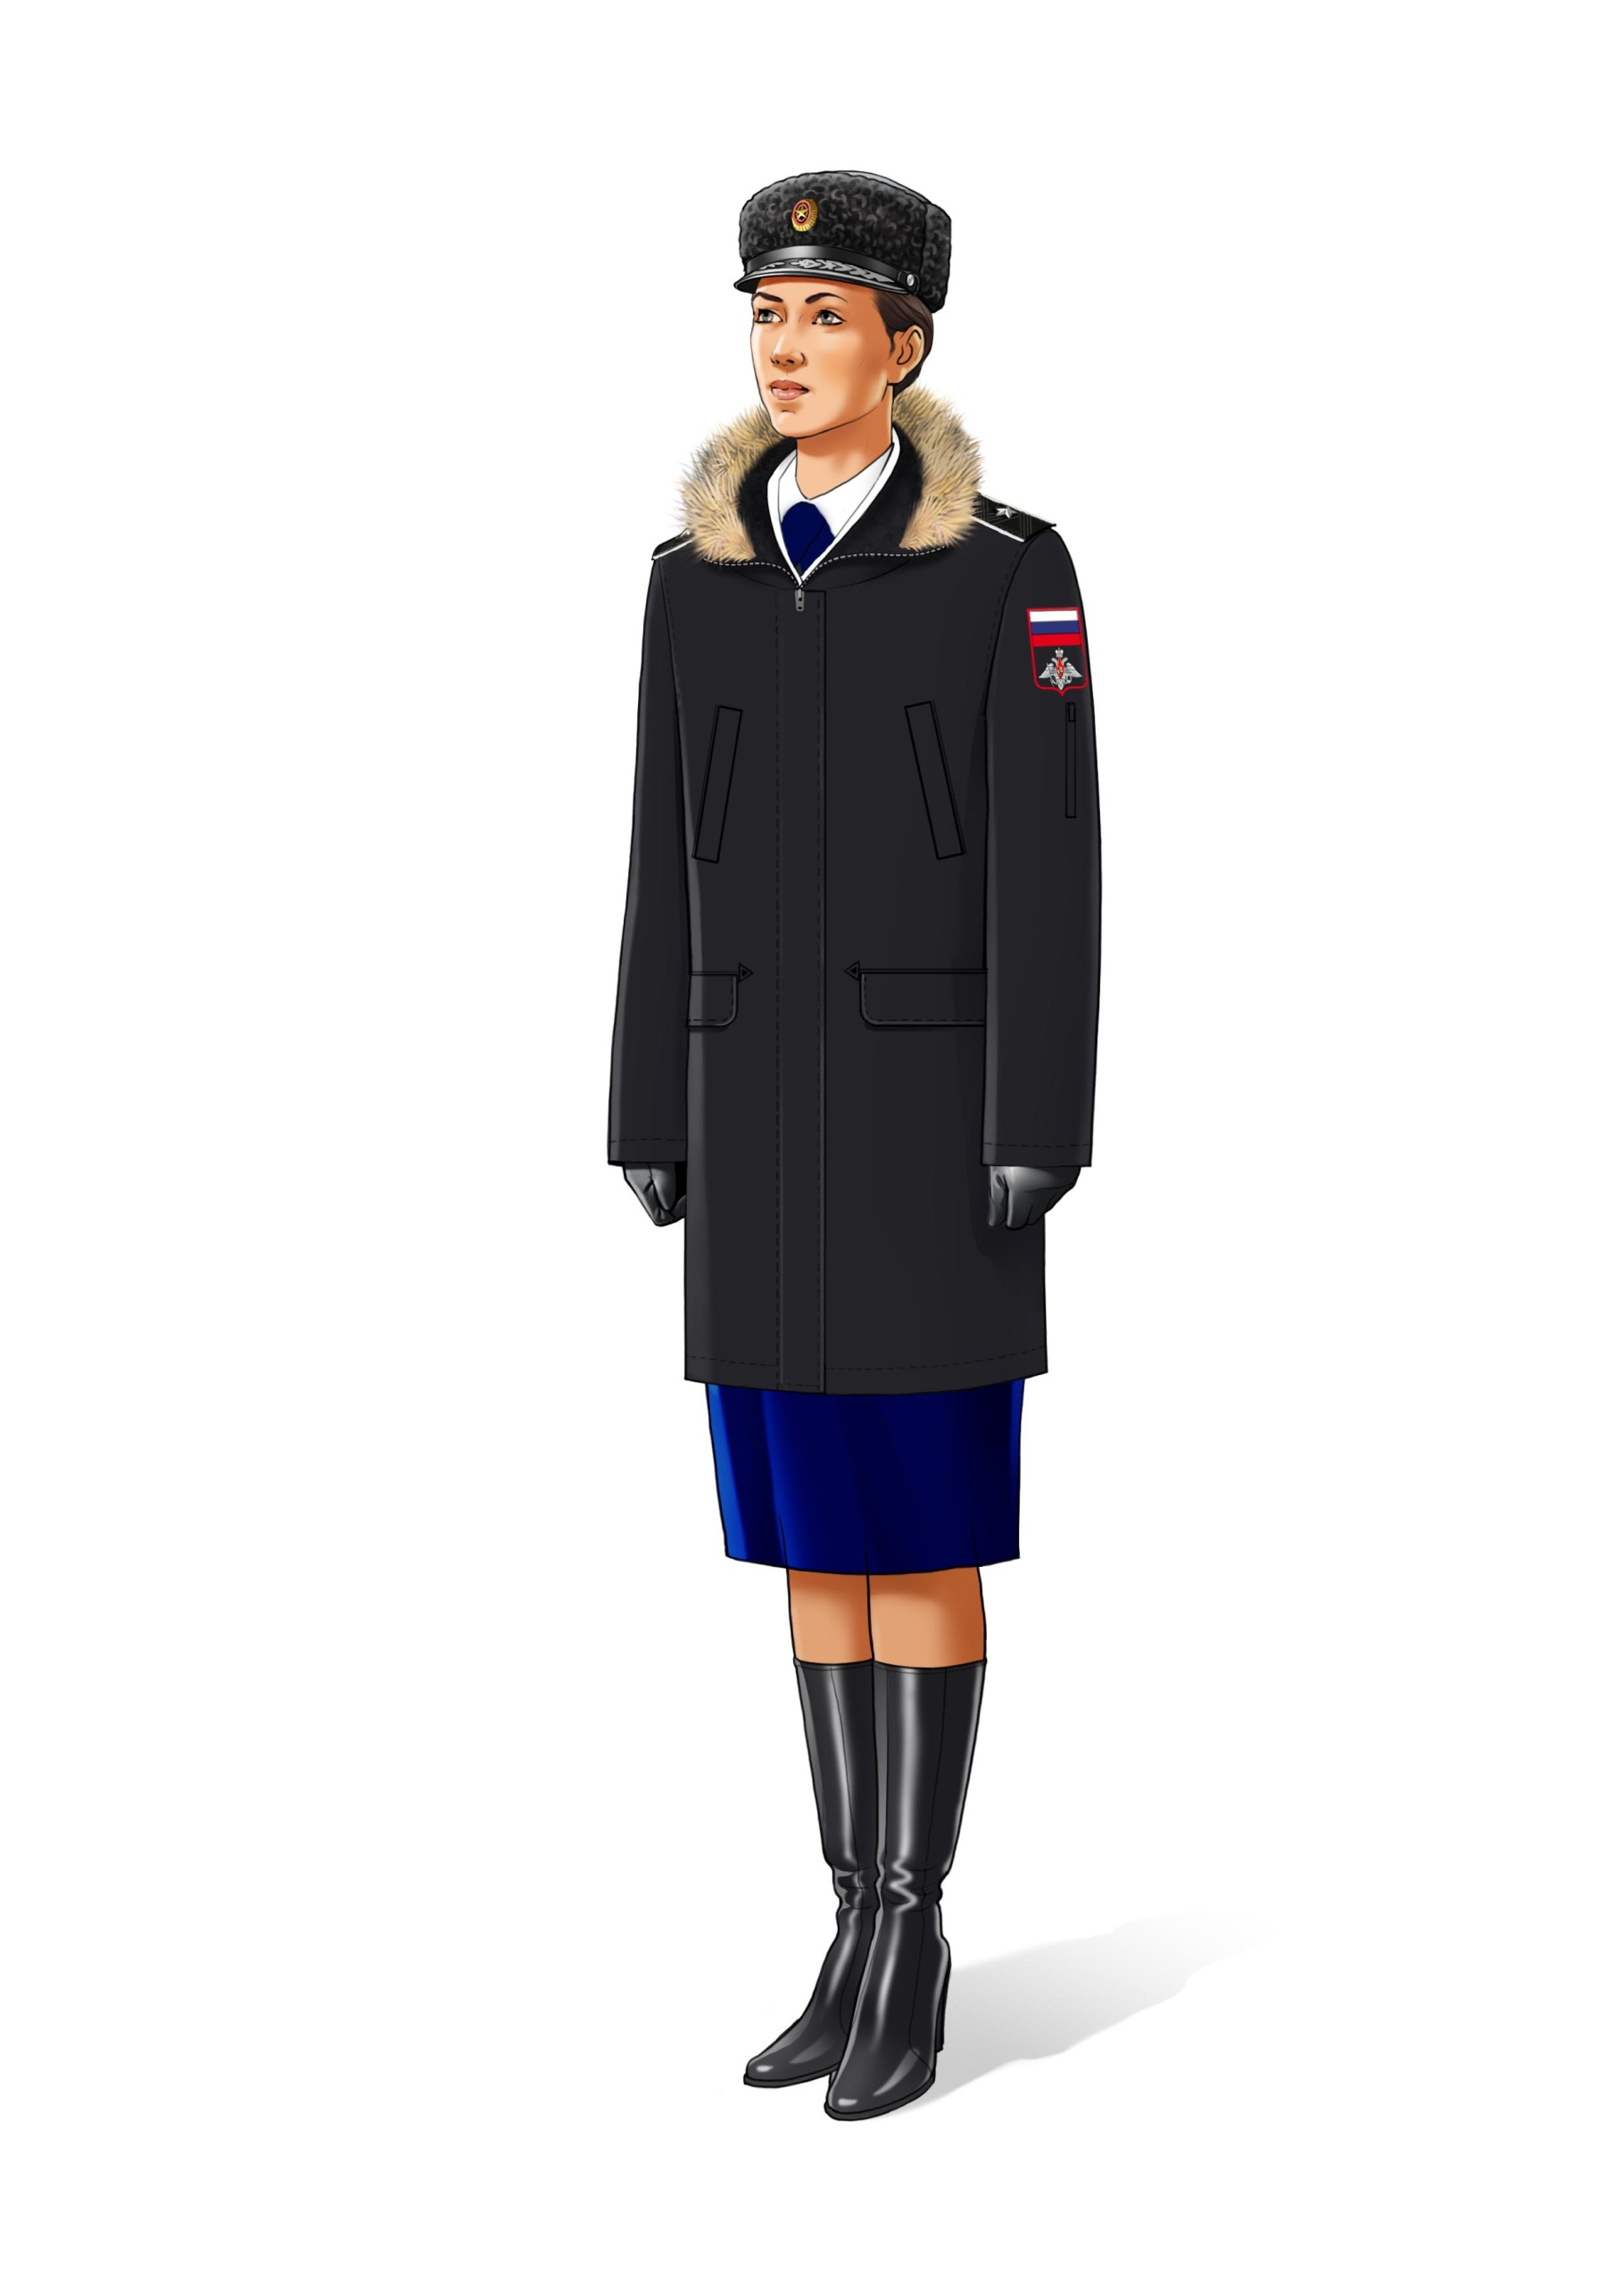 Форма одежды военнослужащих ВМФ Гражданский персонал